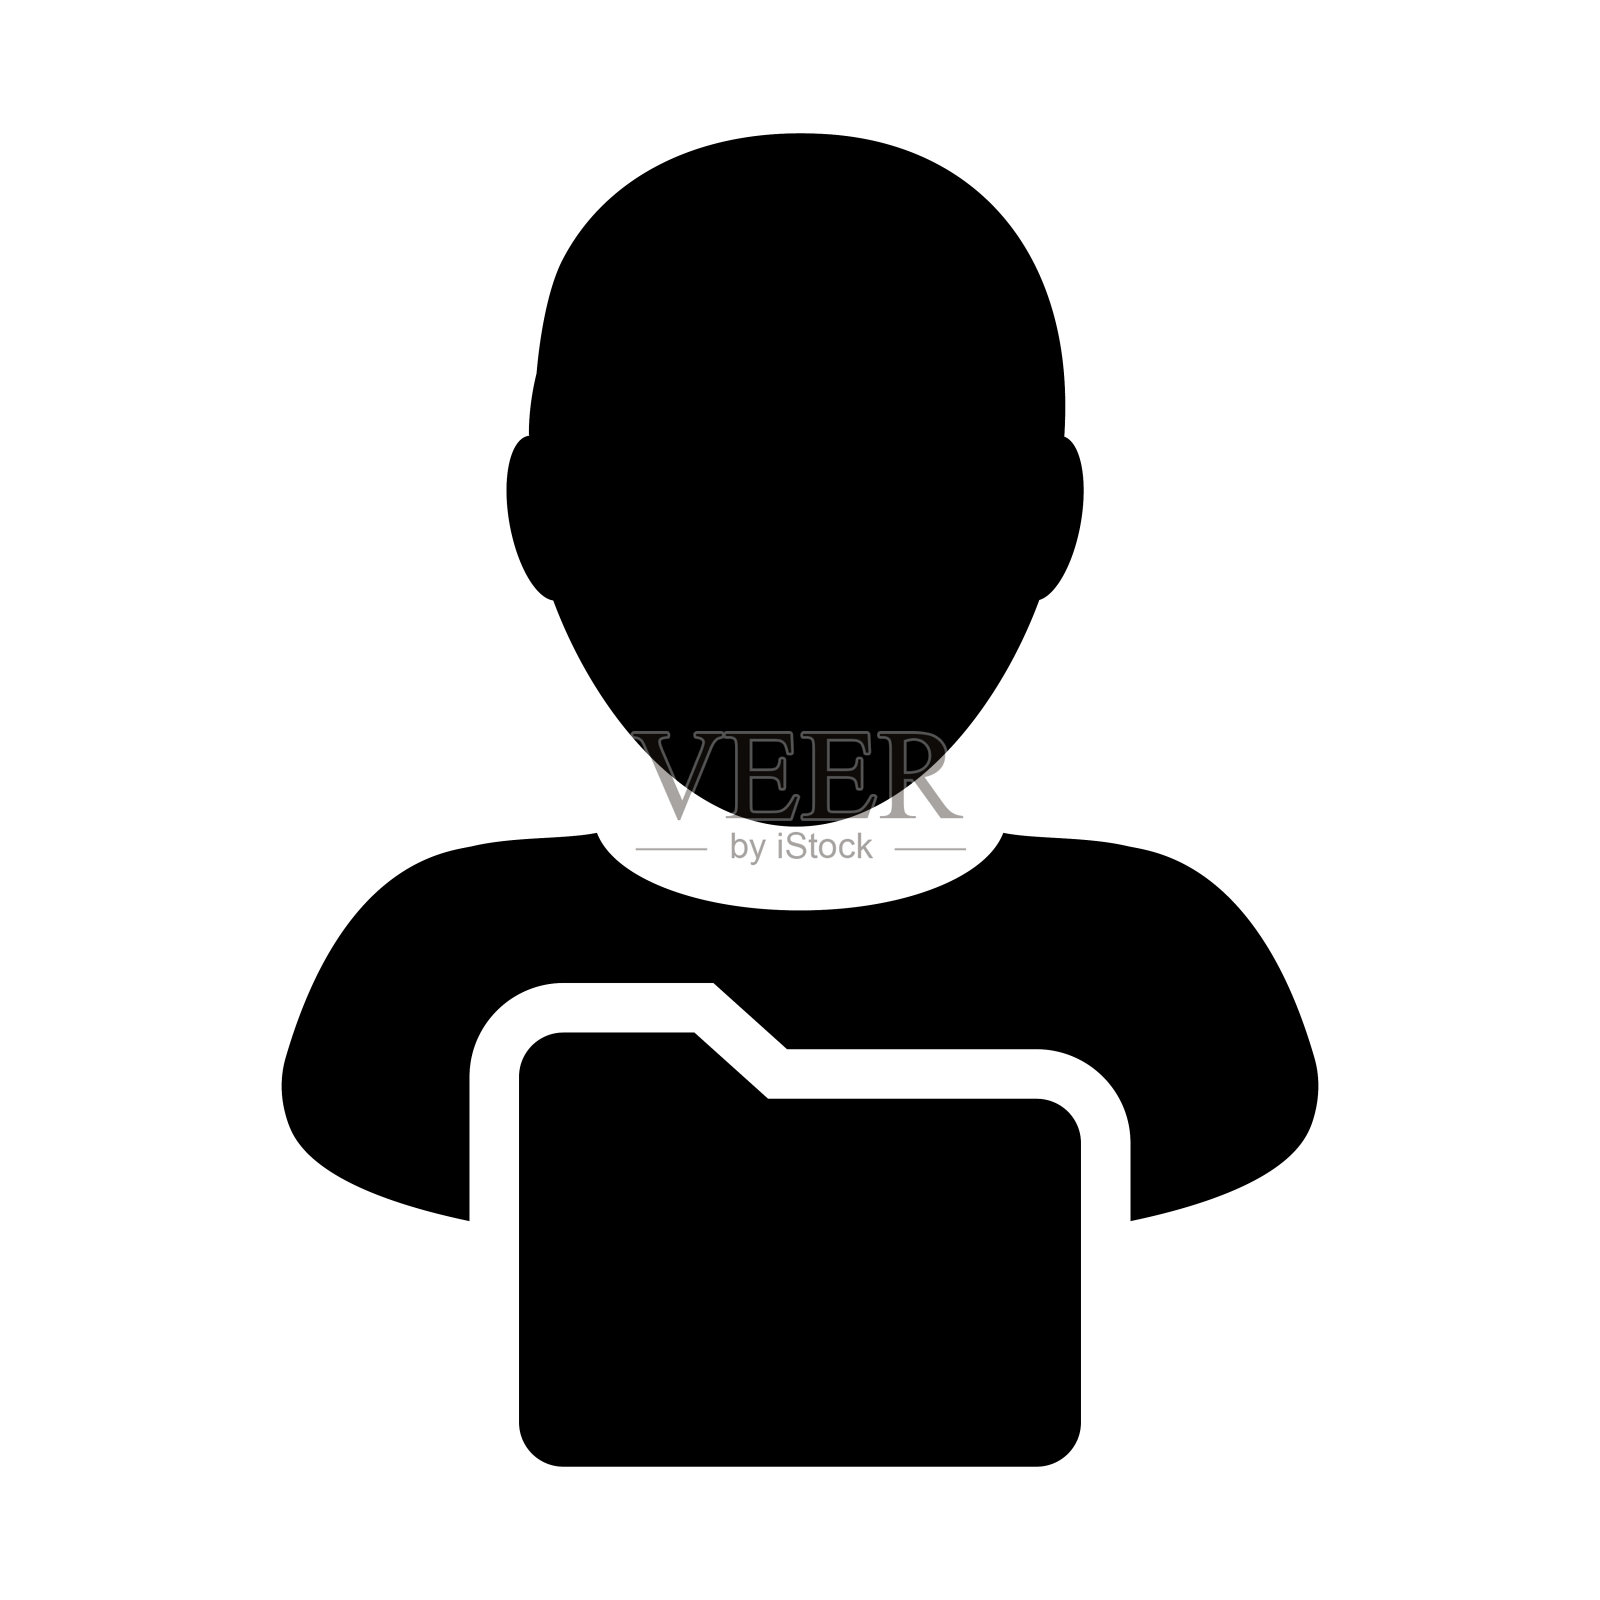 文件夹图标向量与男性用户个人资料文件夹头像在字形象形符号设计元素图片